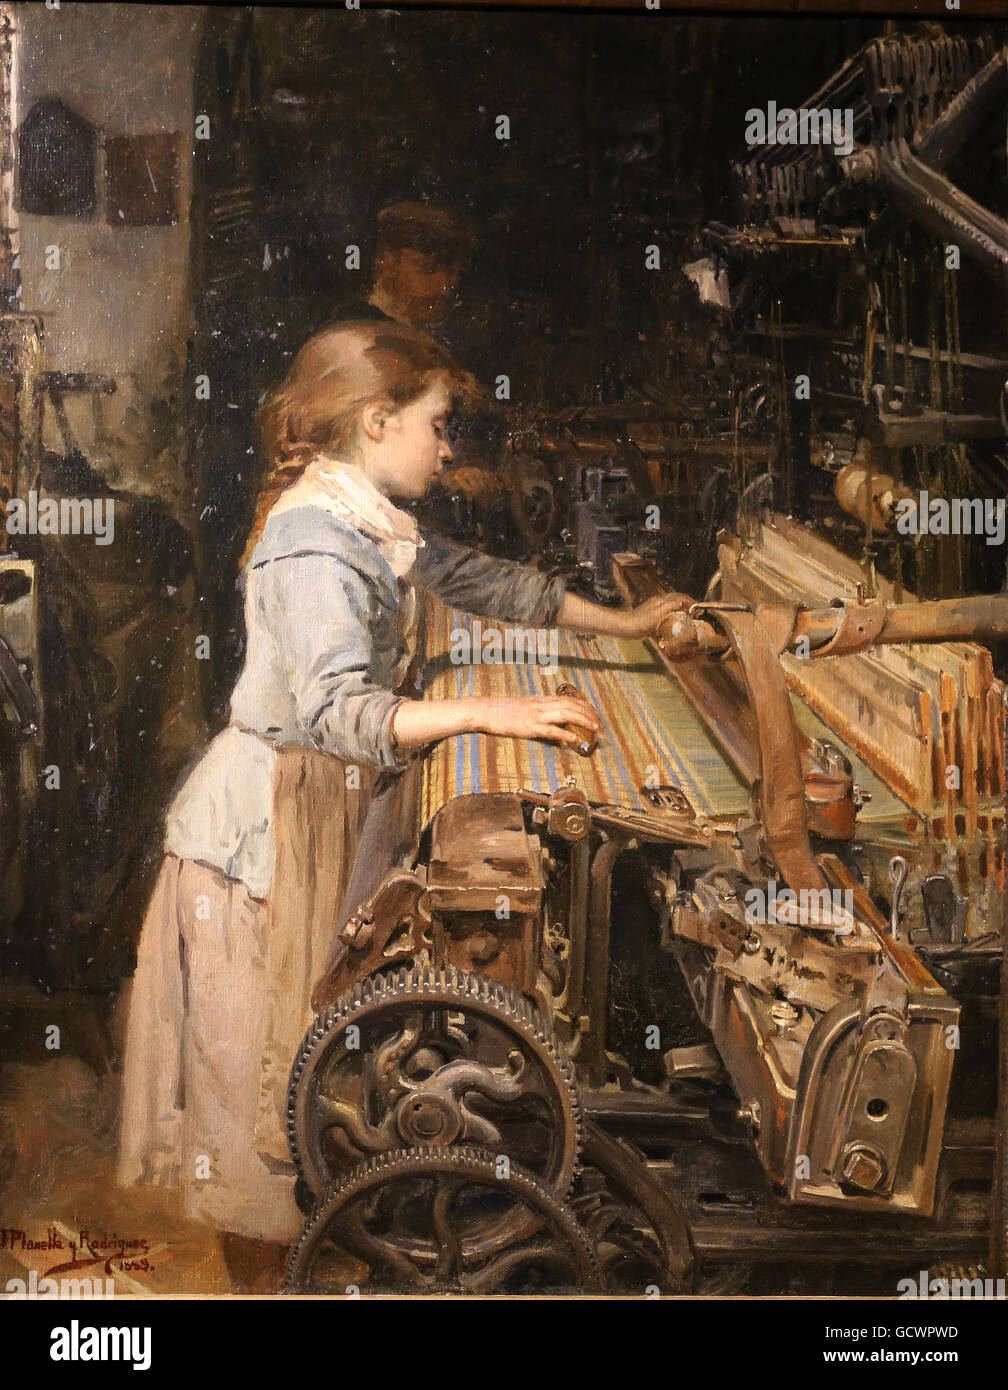 La niña trabajadora por Joan Planella, 1885. Museo de Historia de Cataluña, Barcelona. España. Foto de stock